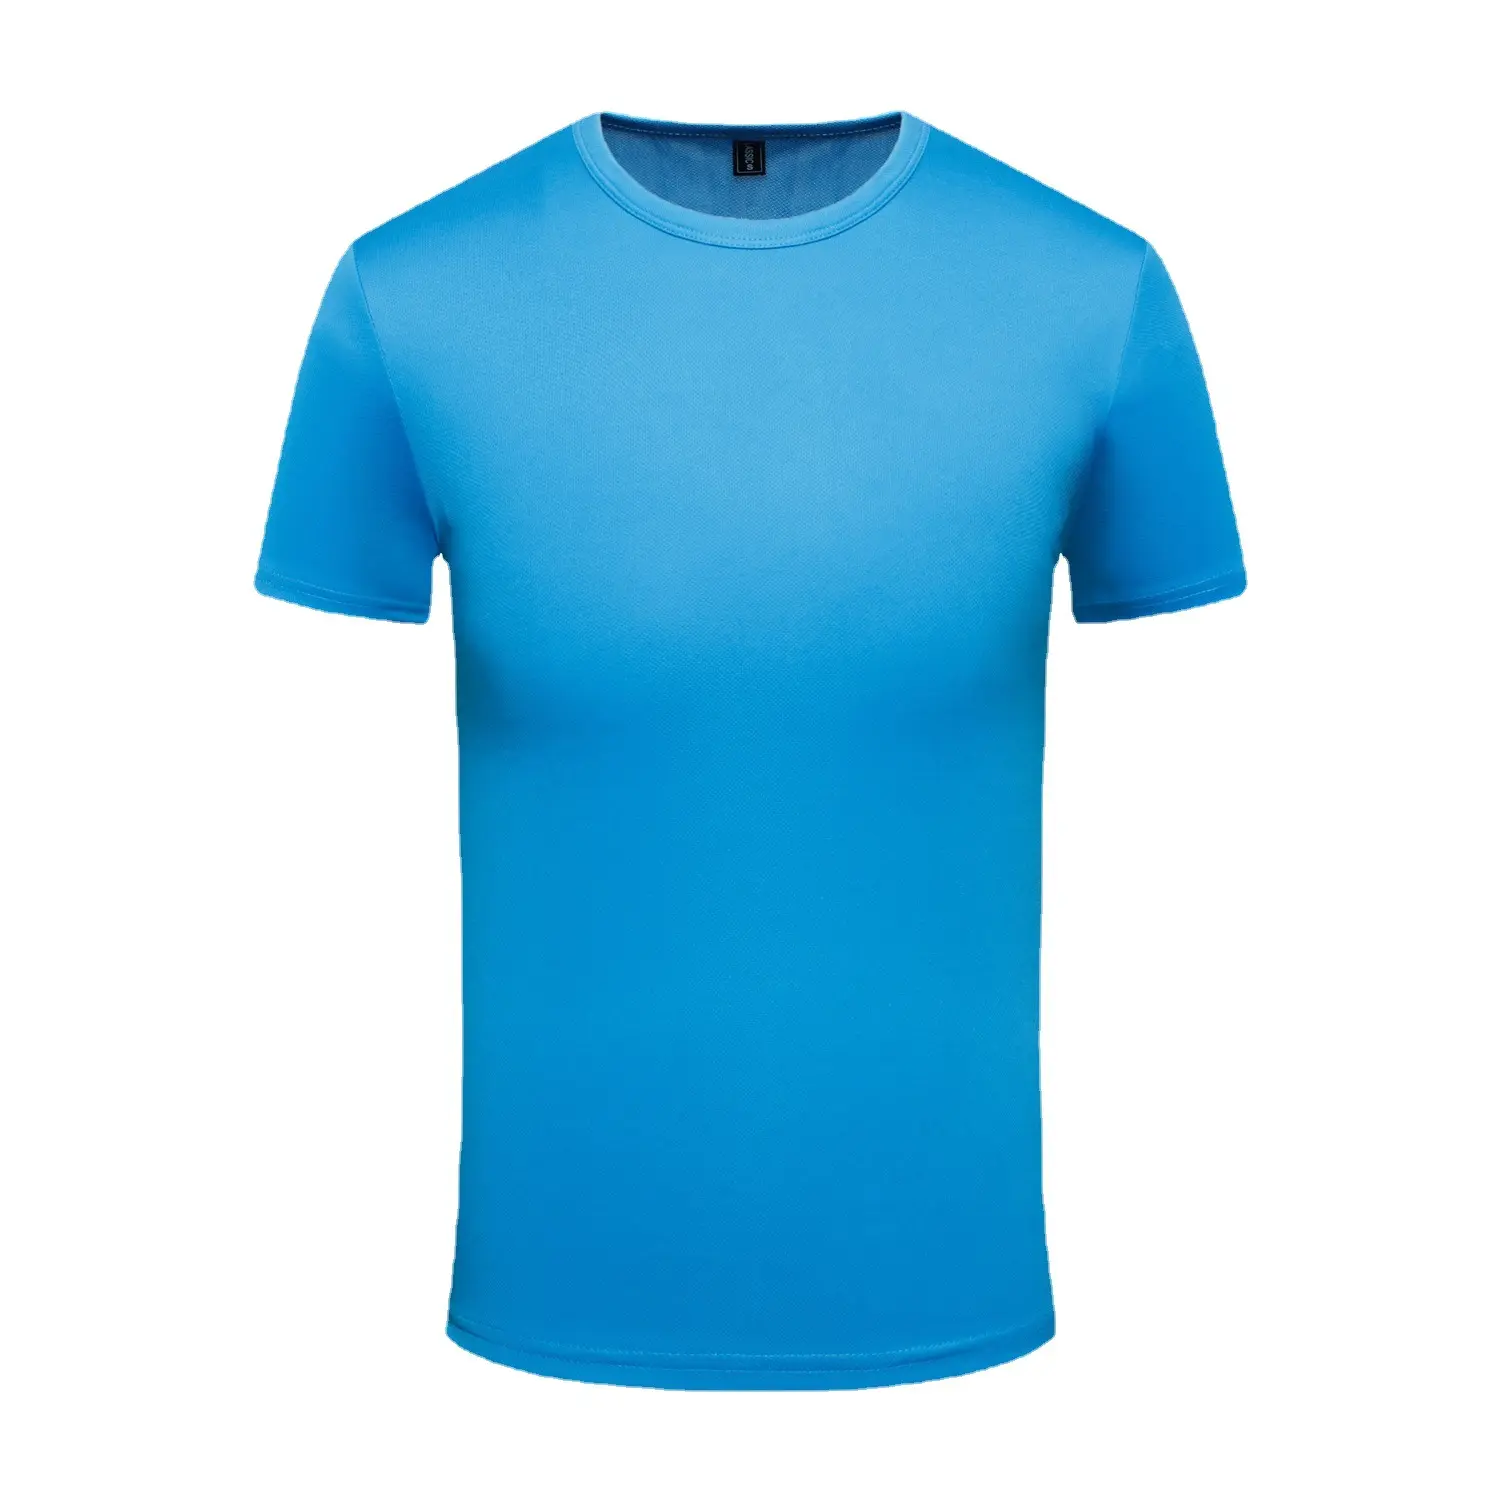 맞춤형 열전달 인쇄 스포츠 폴리에스터 티셔츠 승화 로고 퀵 드라이 일반 남녀공용 승화 셔츠